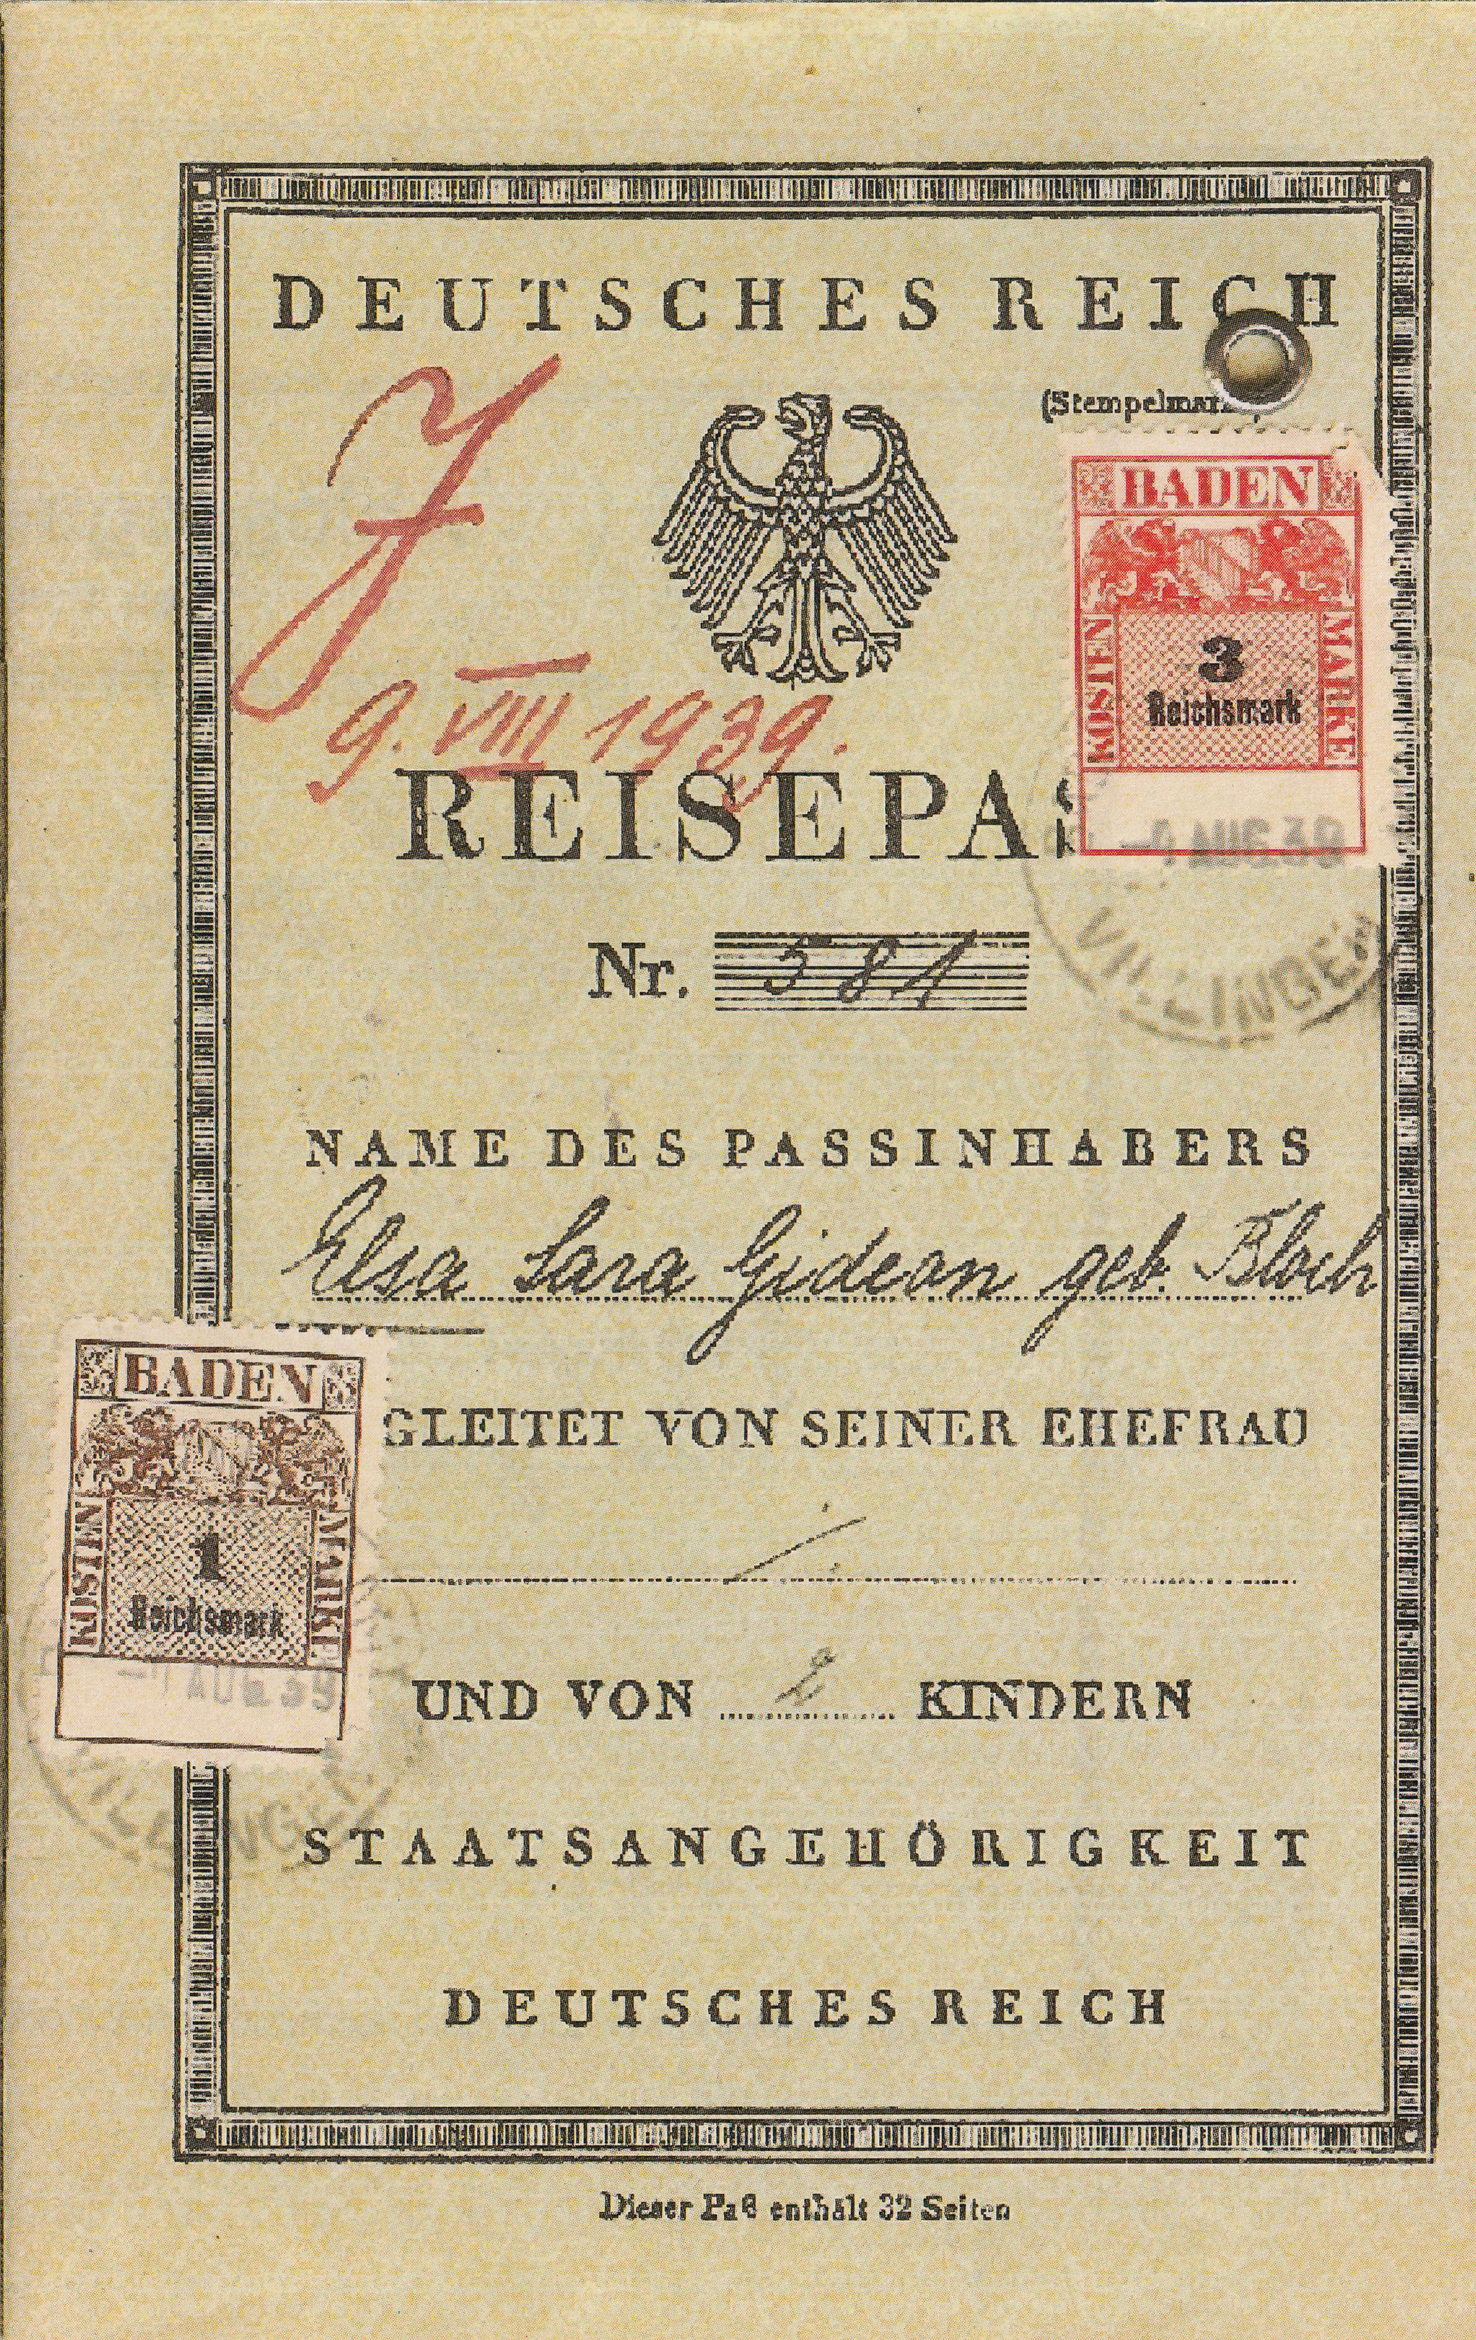 Deutscher Reisepass von Elsa Gideon, 1939. Das rote “J” und der zwangsweise hinzugefügte Vorname “Sara” markieren sie als Jüdin.